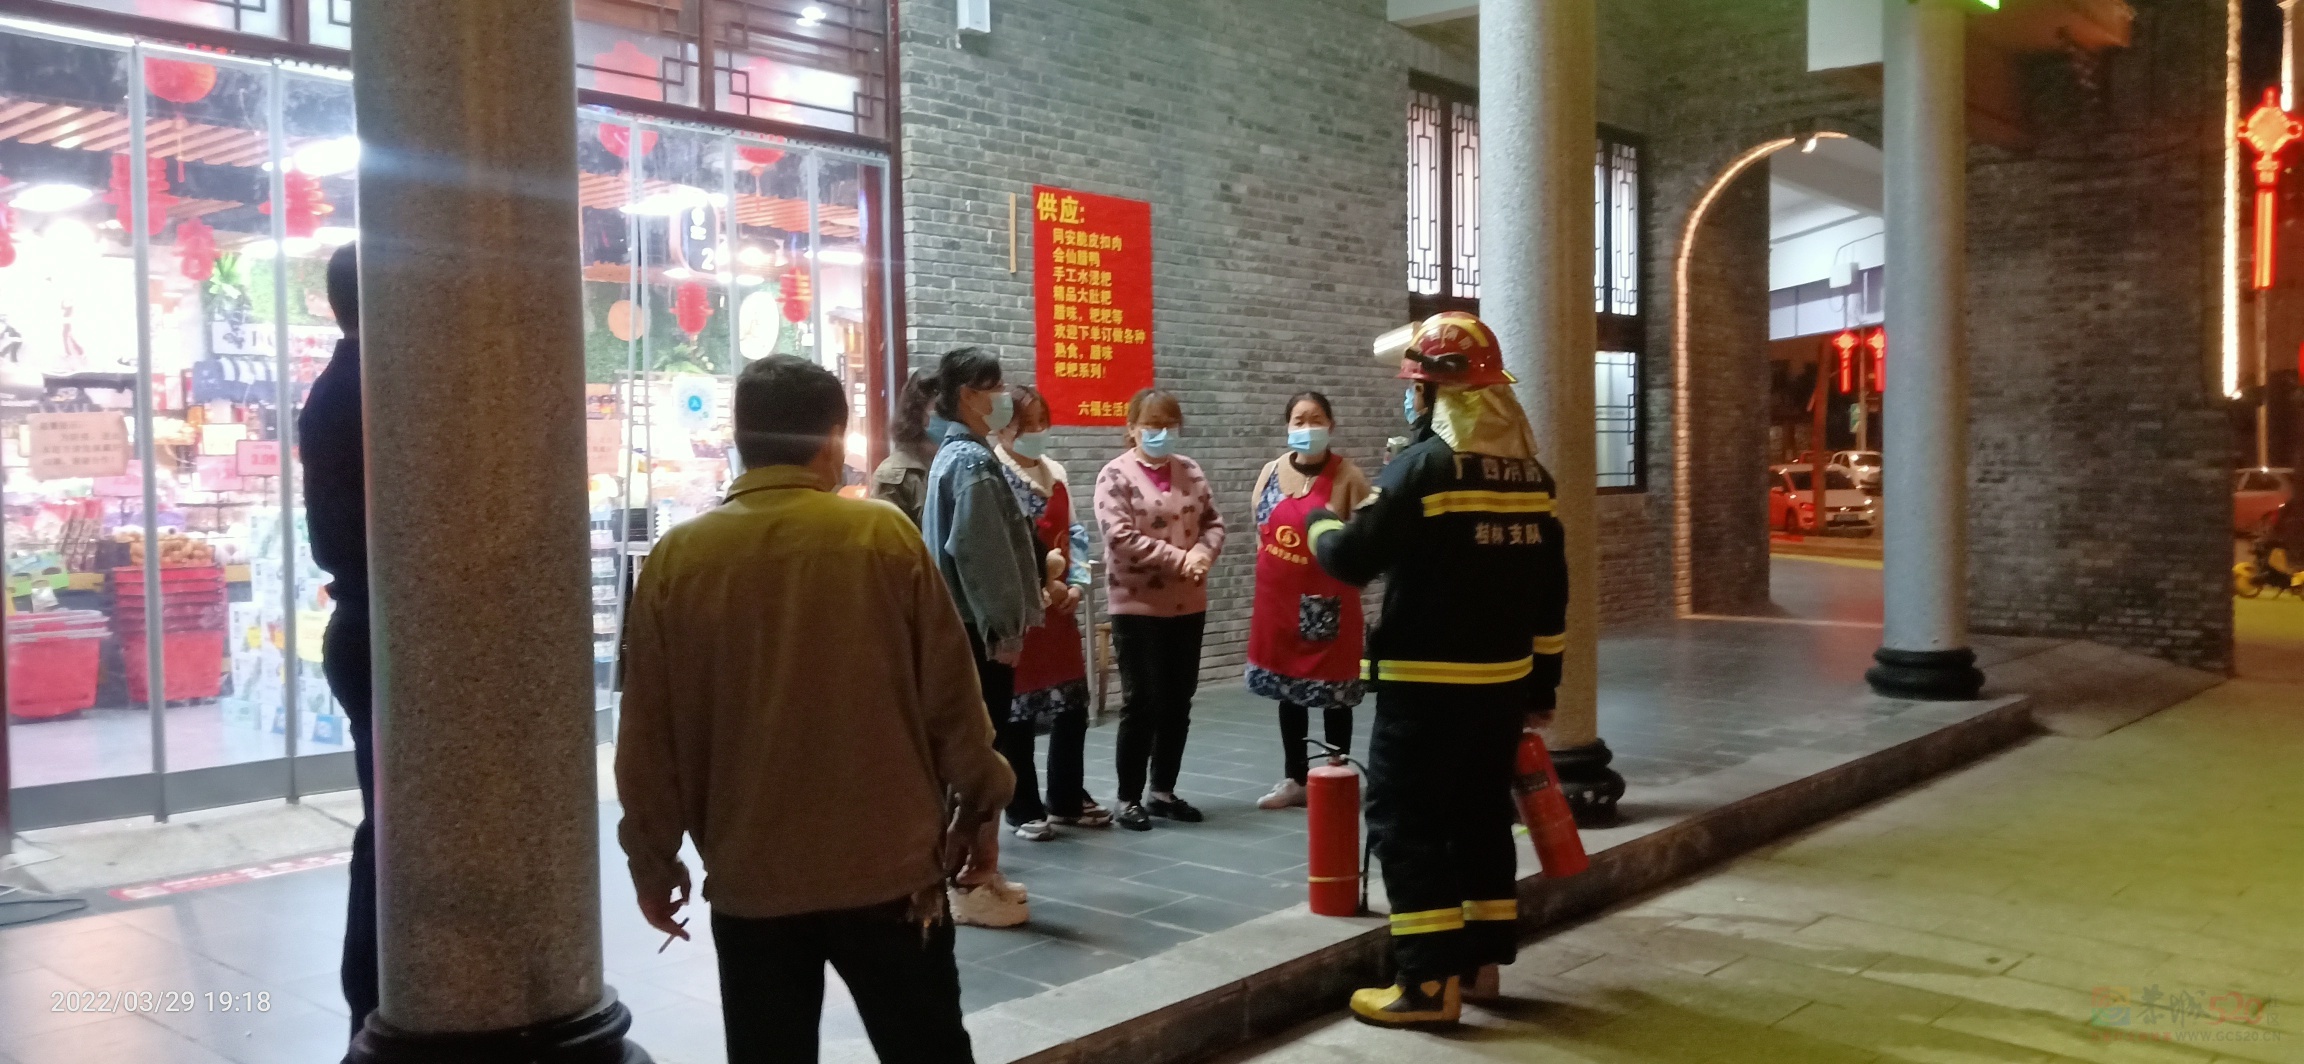 昨晚偶遇消防人员在油茶小镇的六福超市演练消防929 / 作者:陈爱国 / 帖子ID:294073